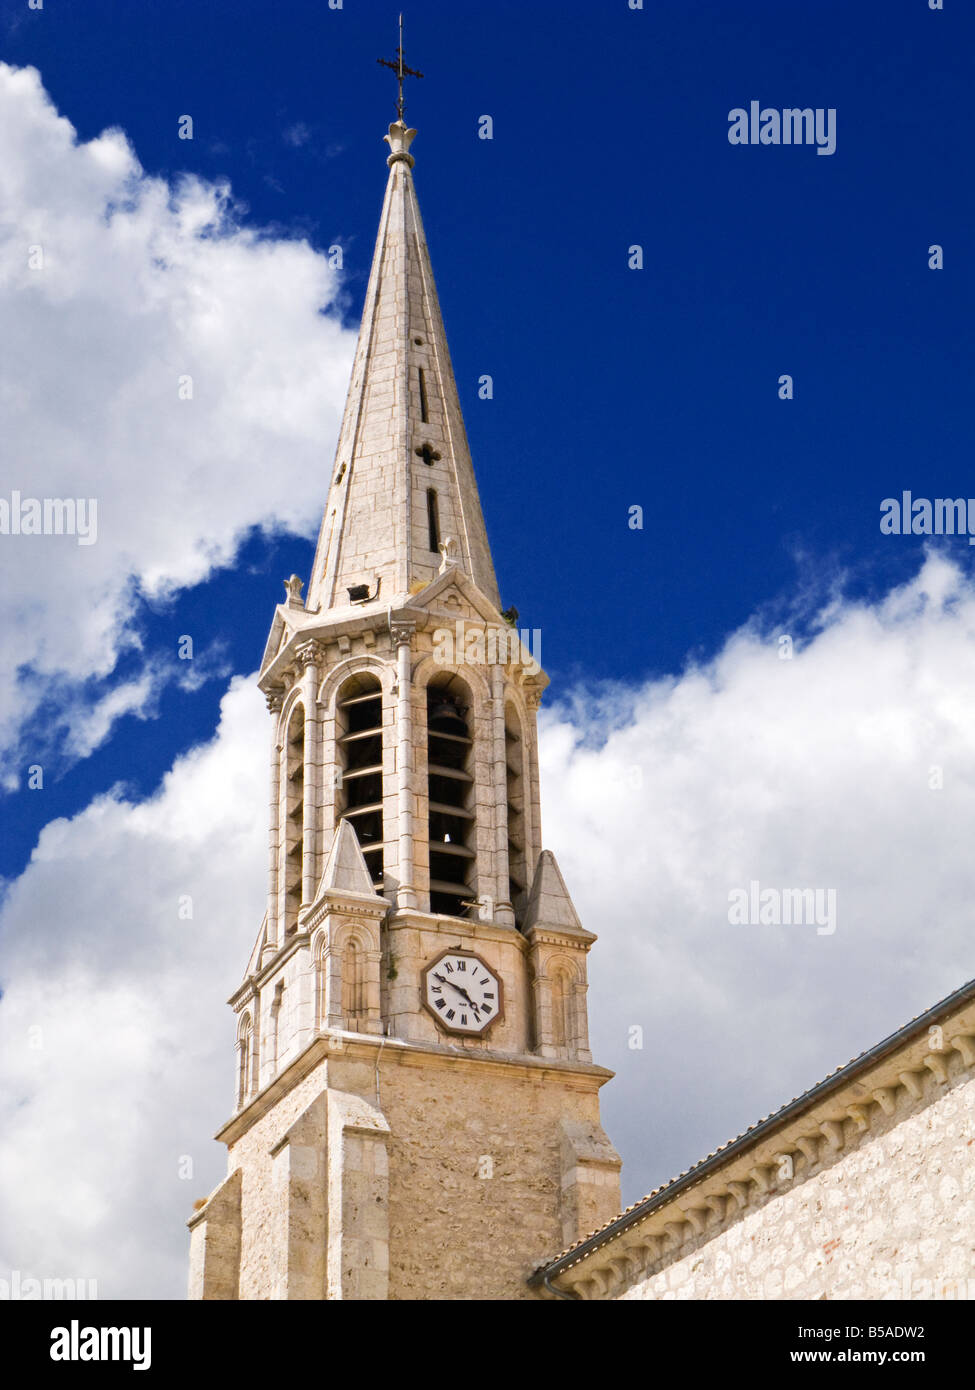 Clocher de l'église clocher et l'horloge, France, Europe Banque D'Images